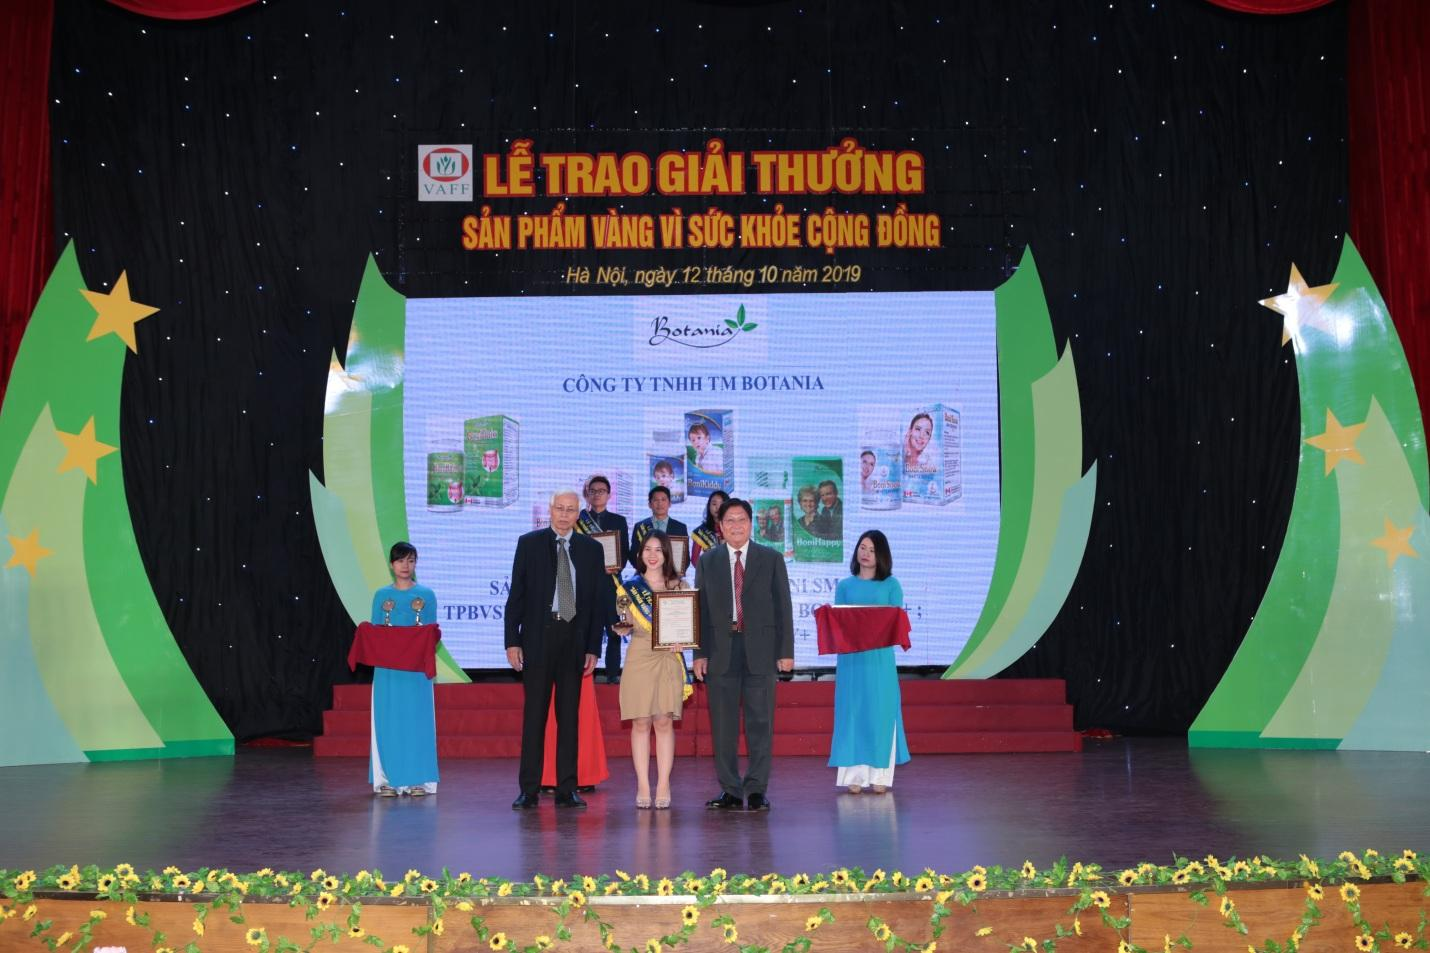 PGS.TS Trần Đáng và TS Phạm Hưng Củng trao giải thưởng cho đại diện công ty Botania